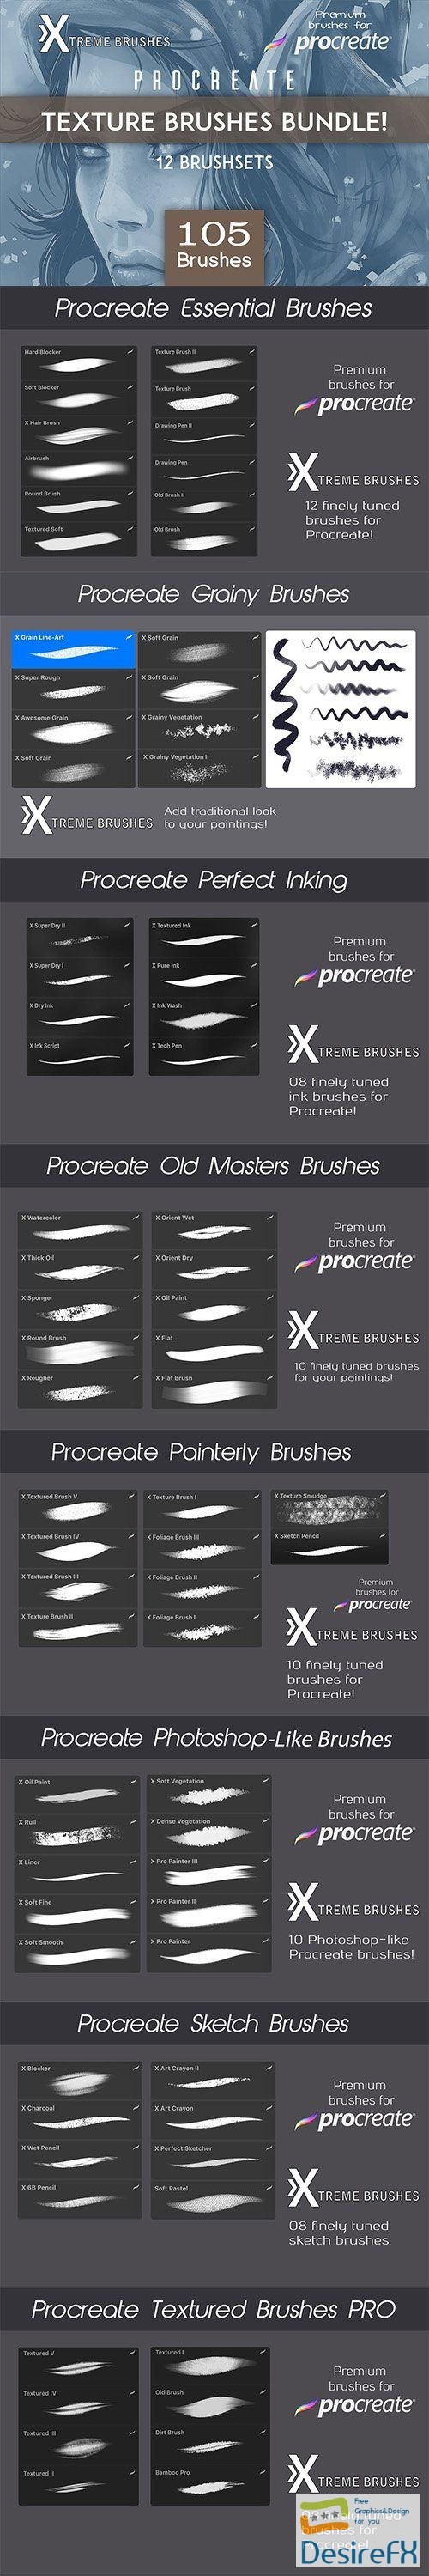 CreativeMarket - Procreate Texture Brushes BUNDLE 3480564